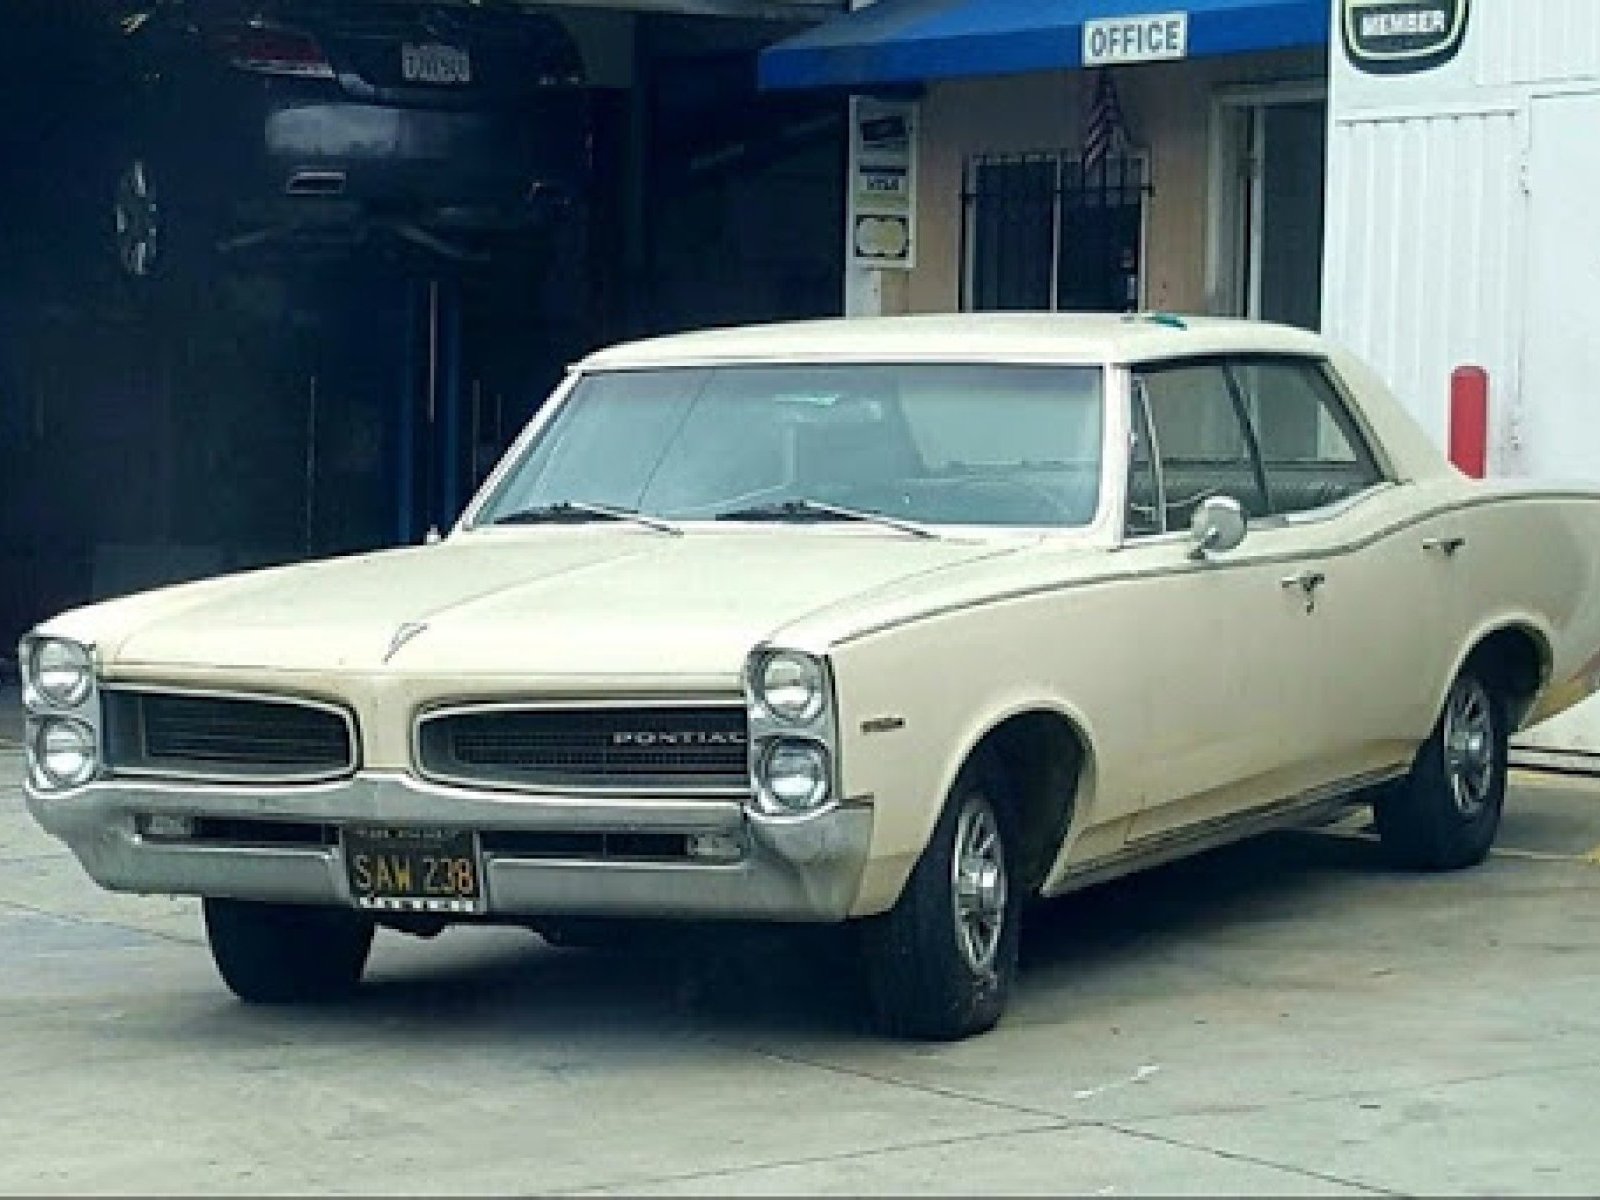 1966 Pontiac Tempest Custom